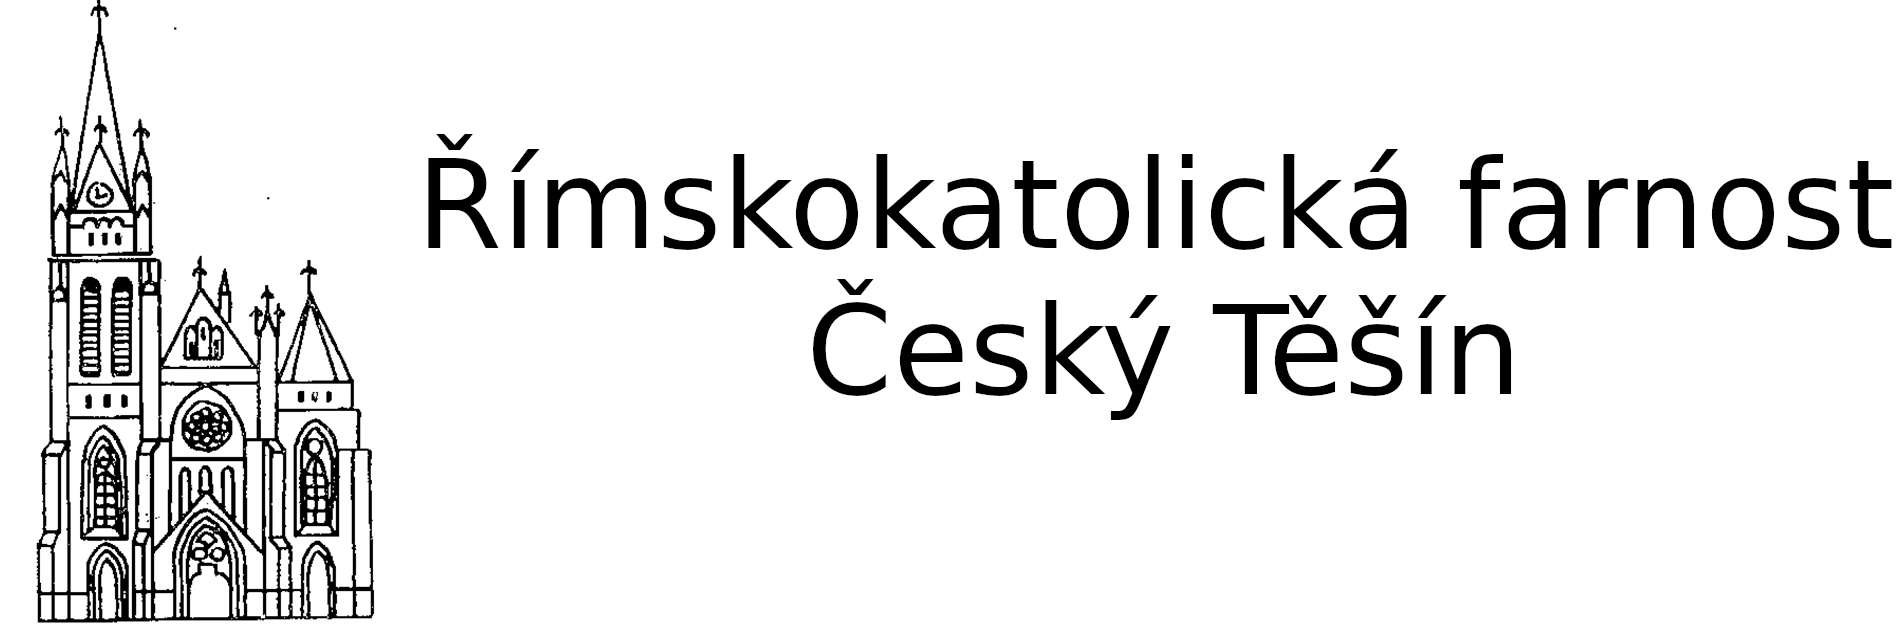 Logo  intence - Římskokatolická farnost Český Těšín